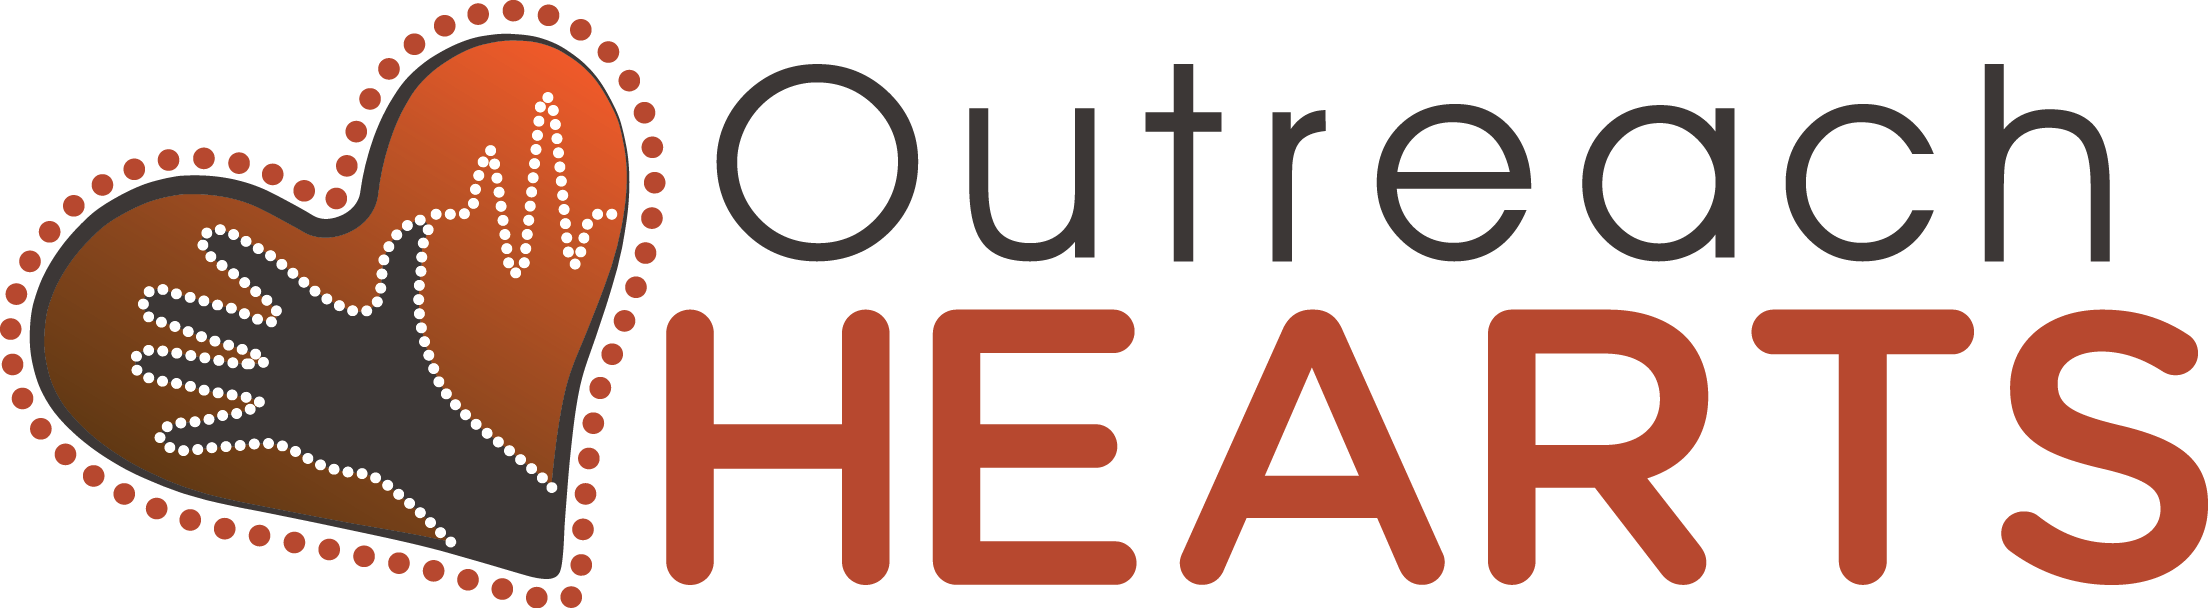 Outreach hearts logo